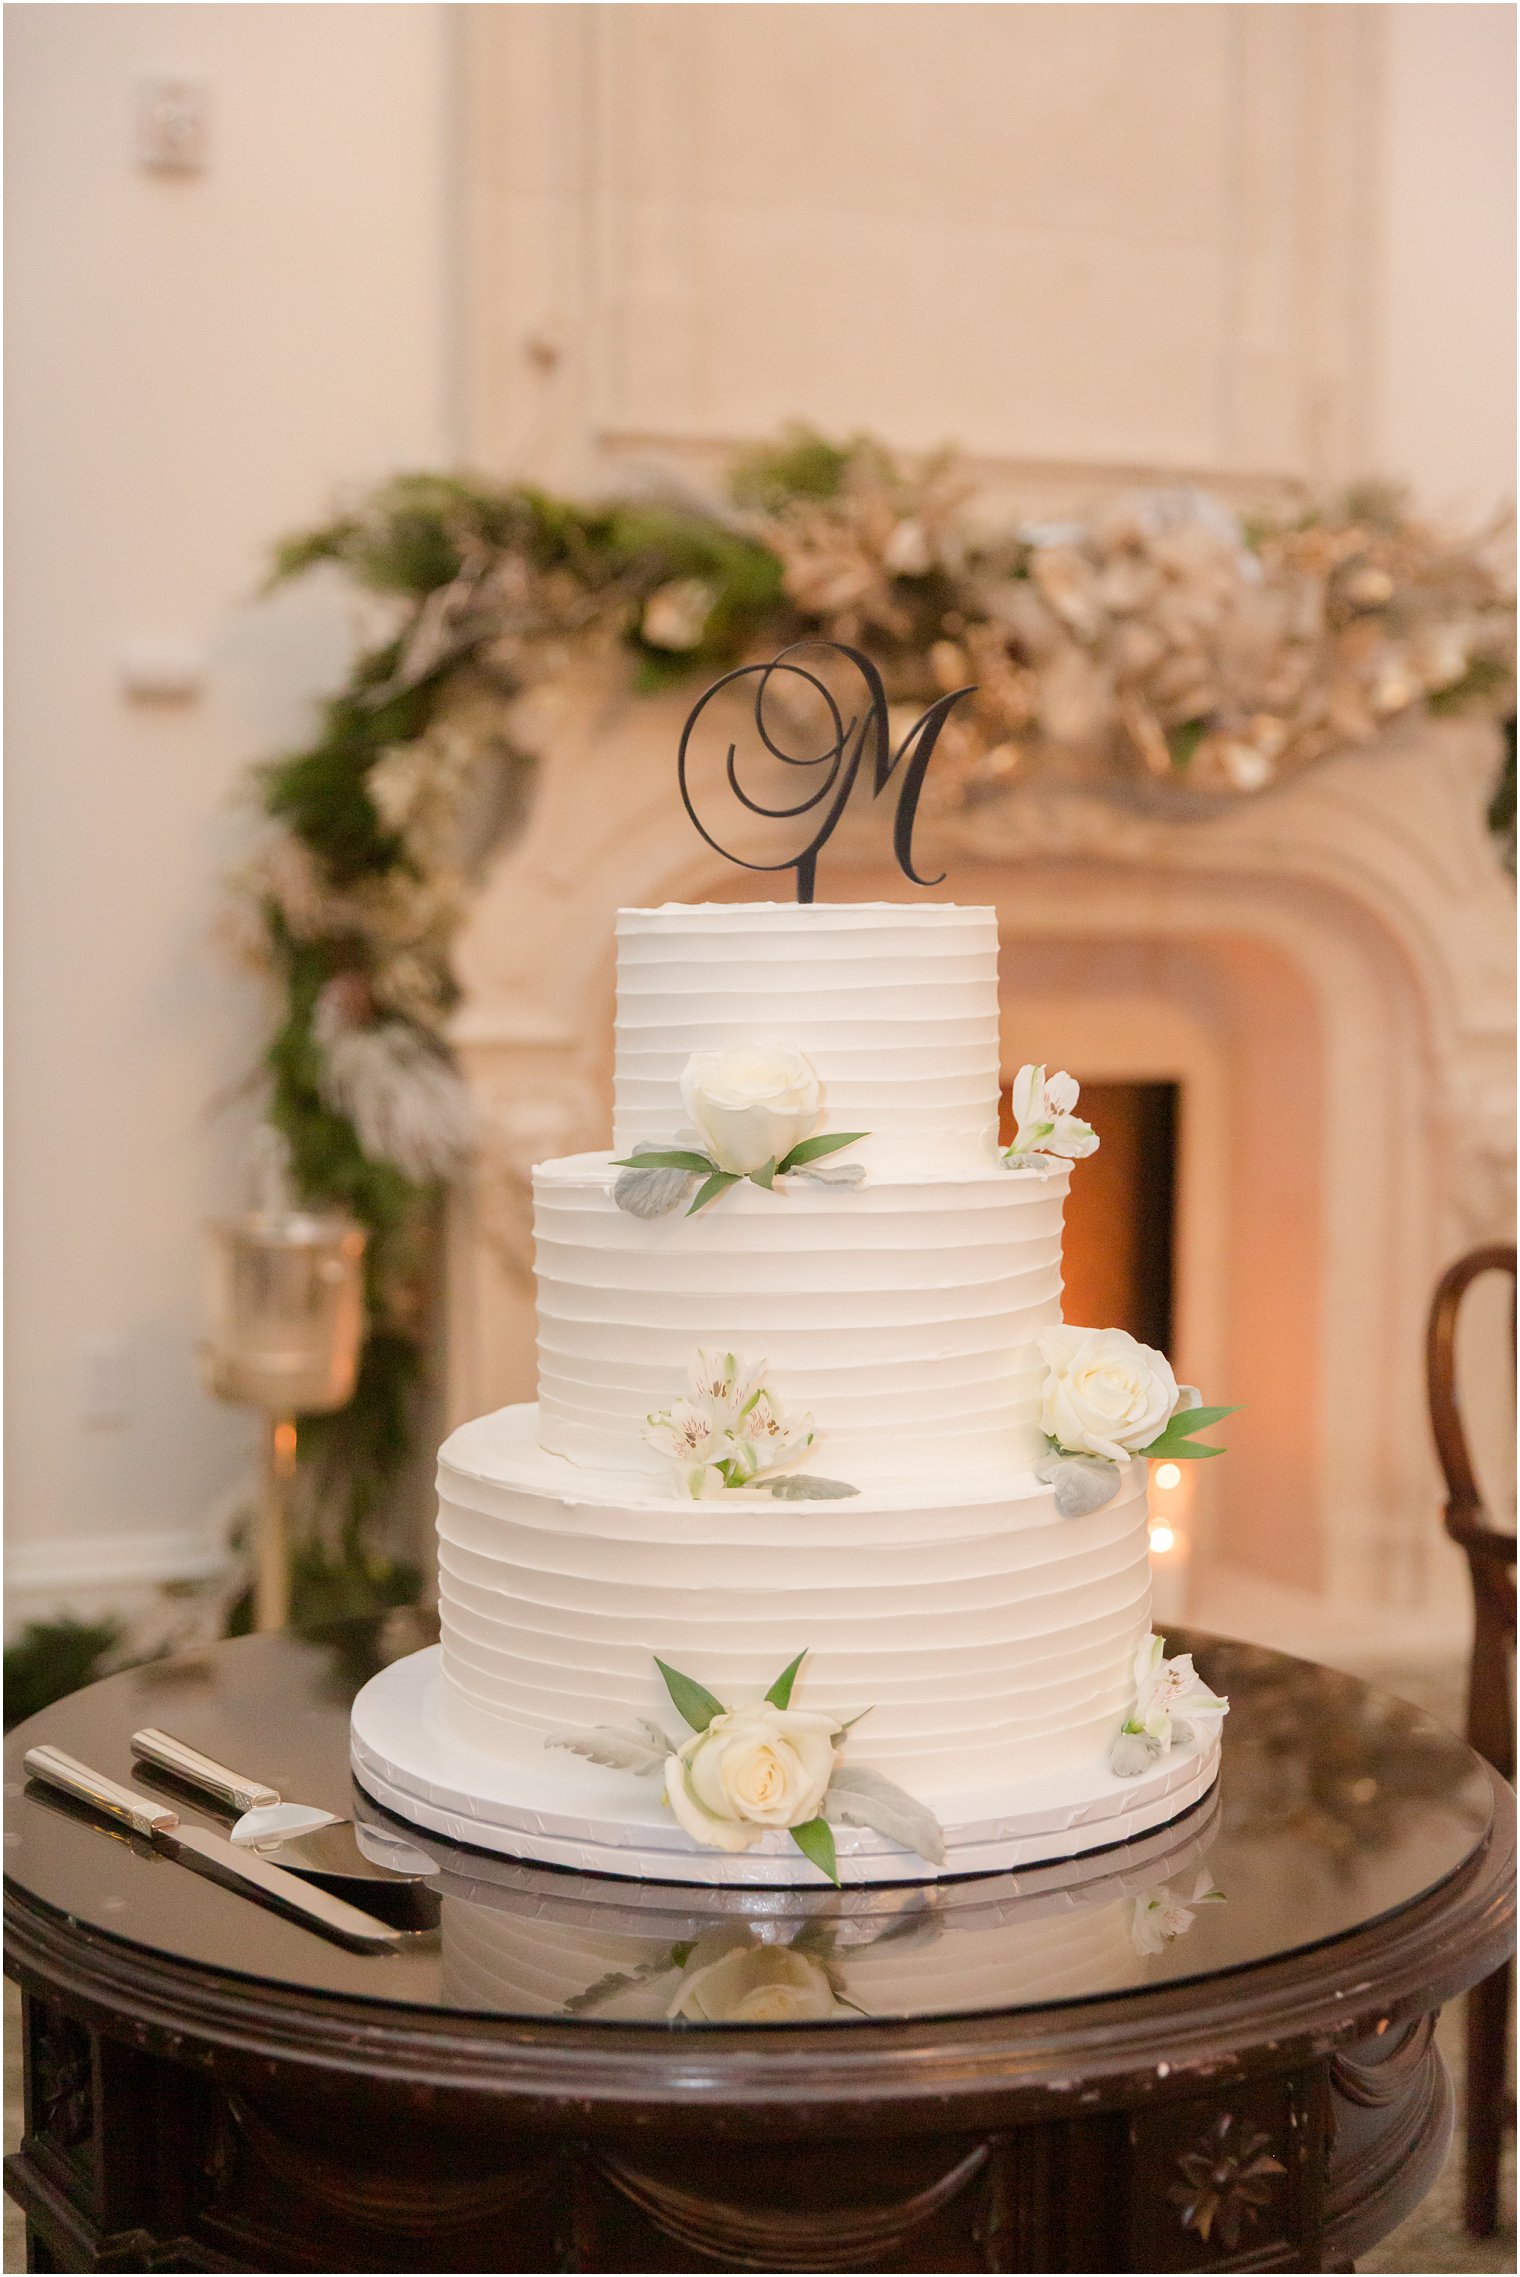 Wedding cake by Calandra's Bakery | Photos by Idalia Photography